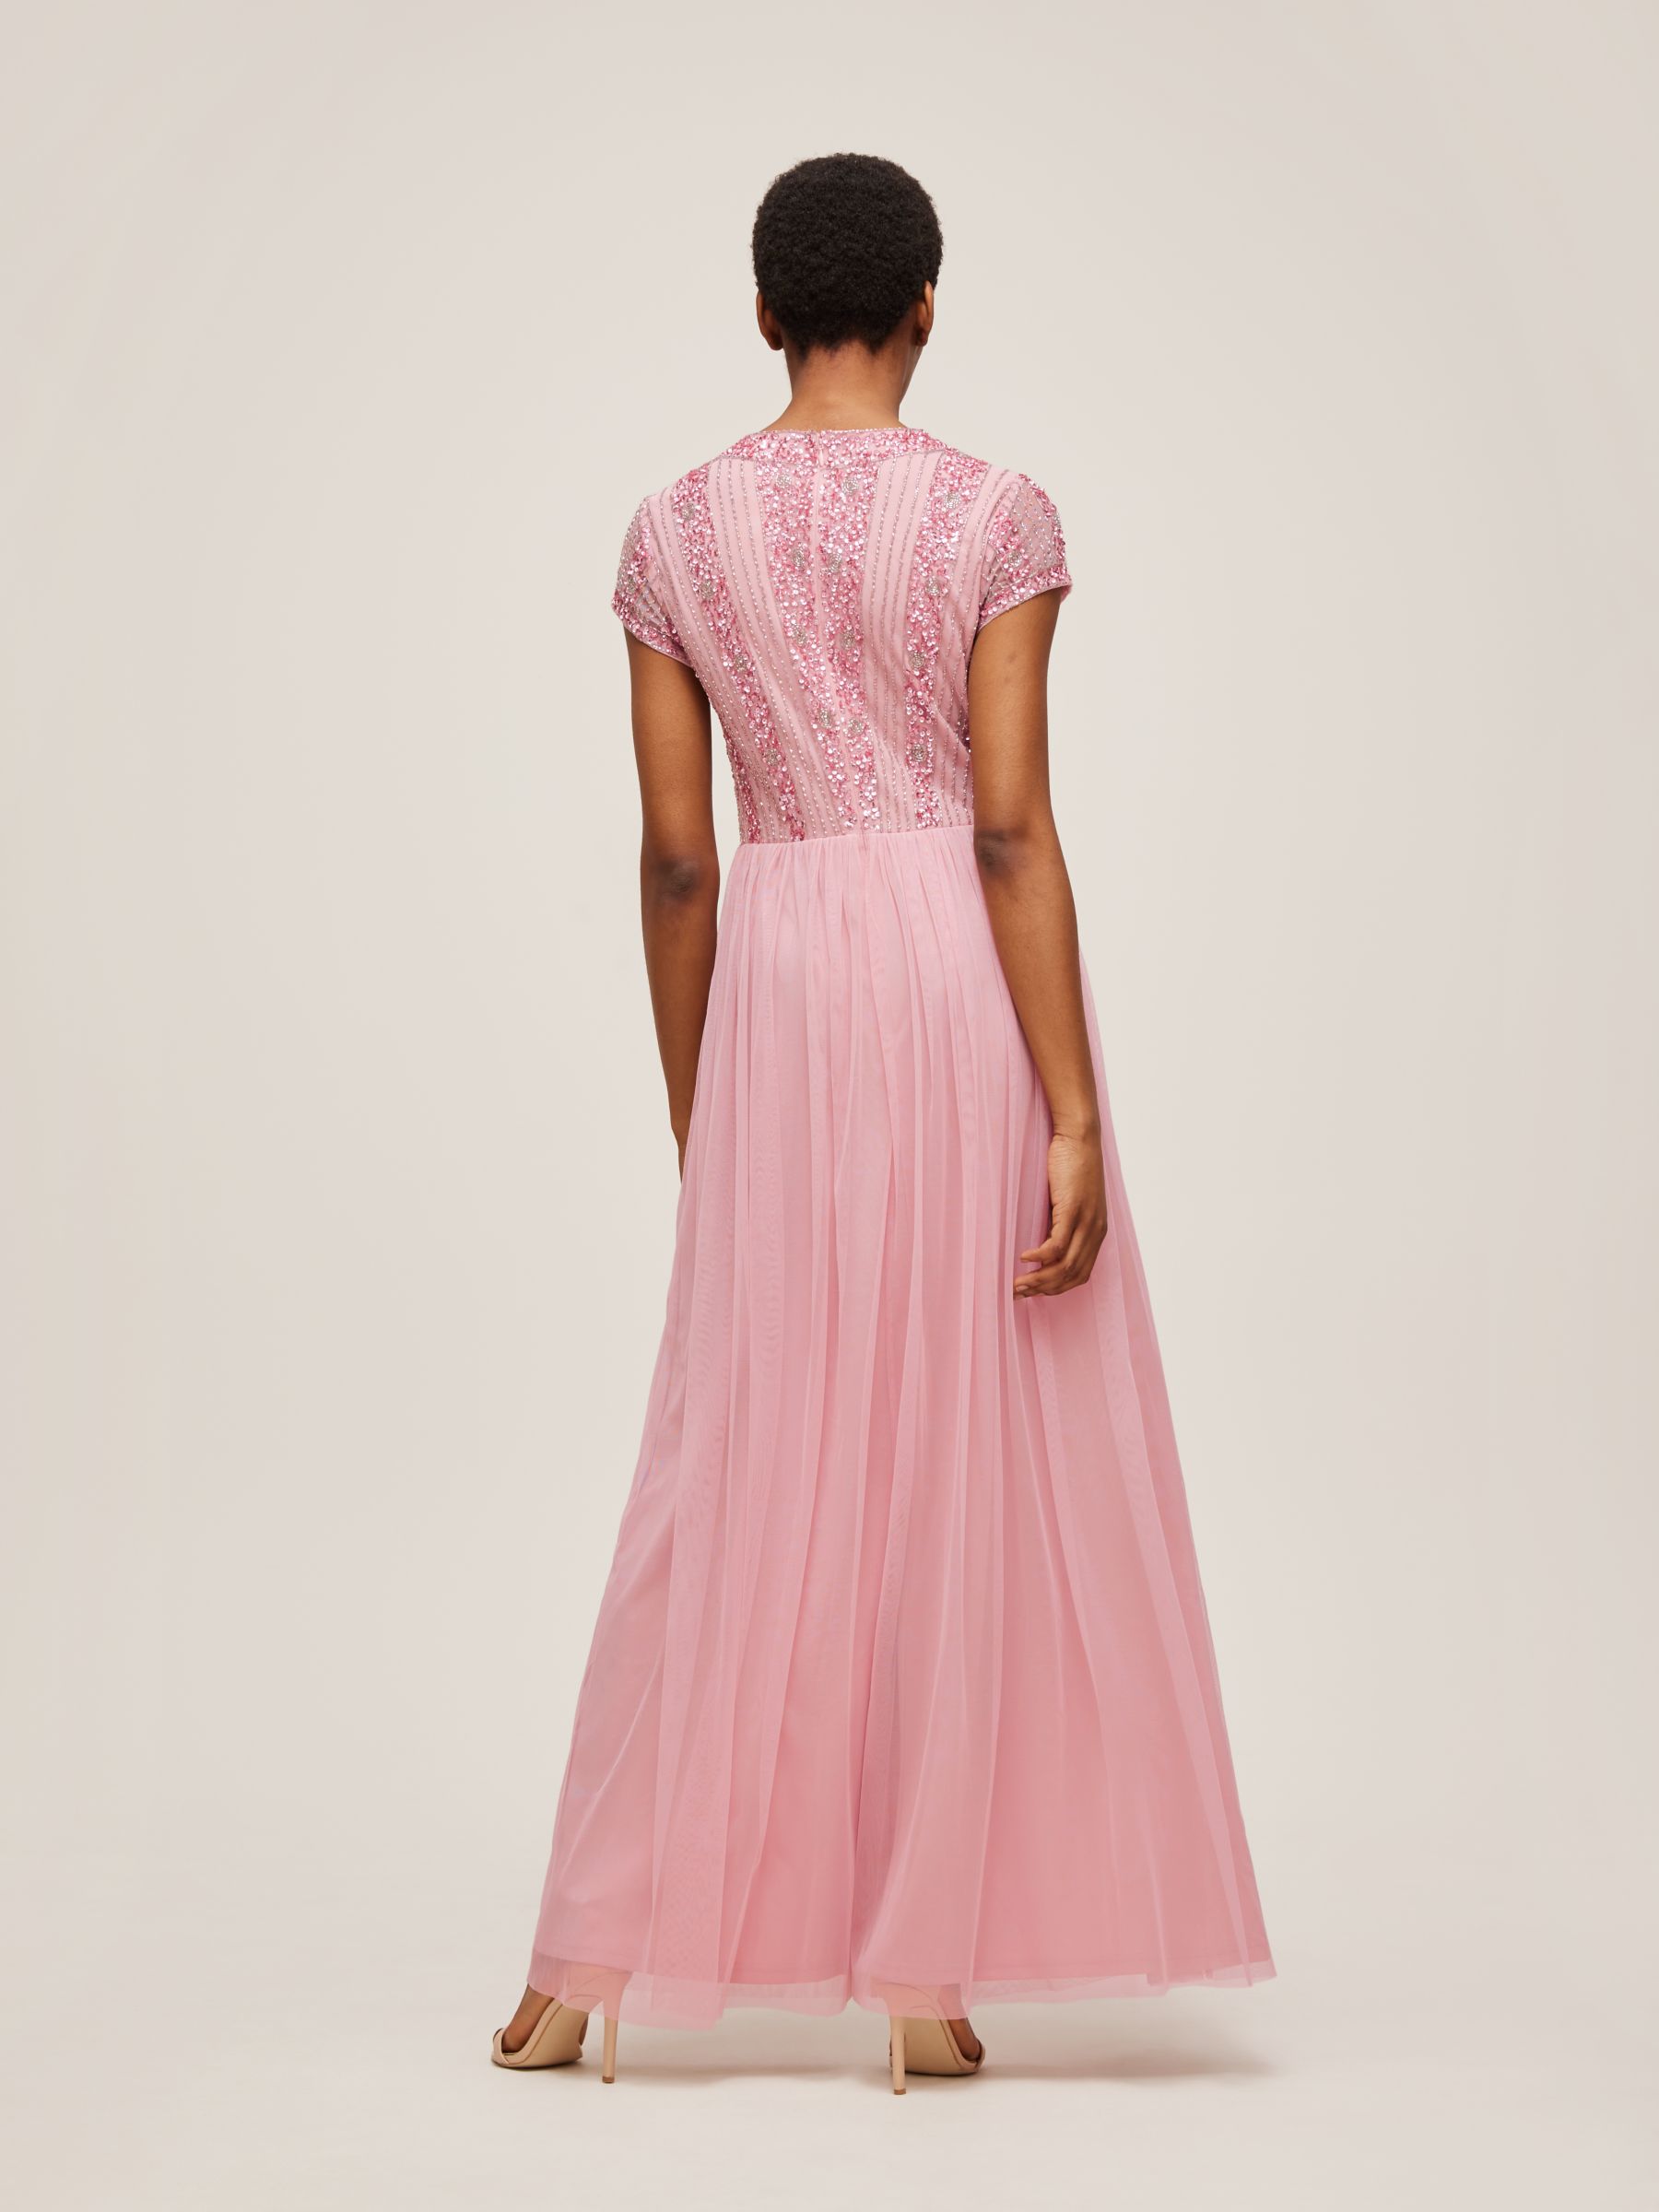 Lace & Beads Maha Embellished Bodice Maxi Dress, Mauve, 8